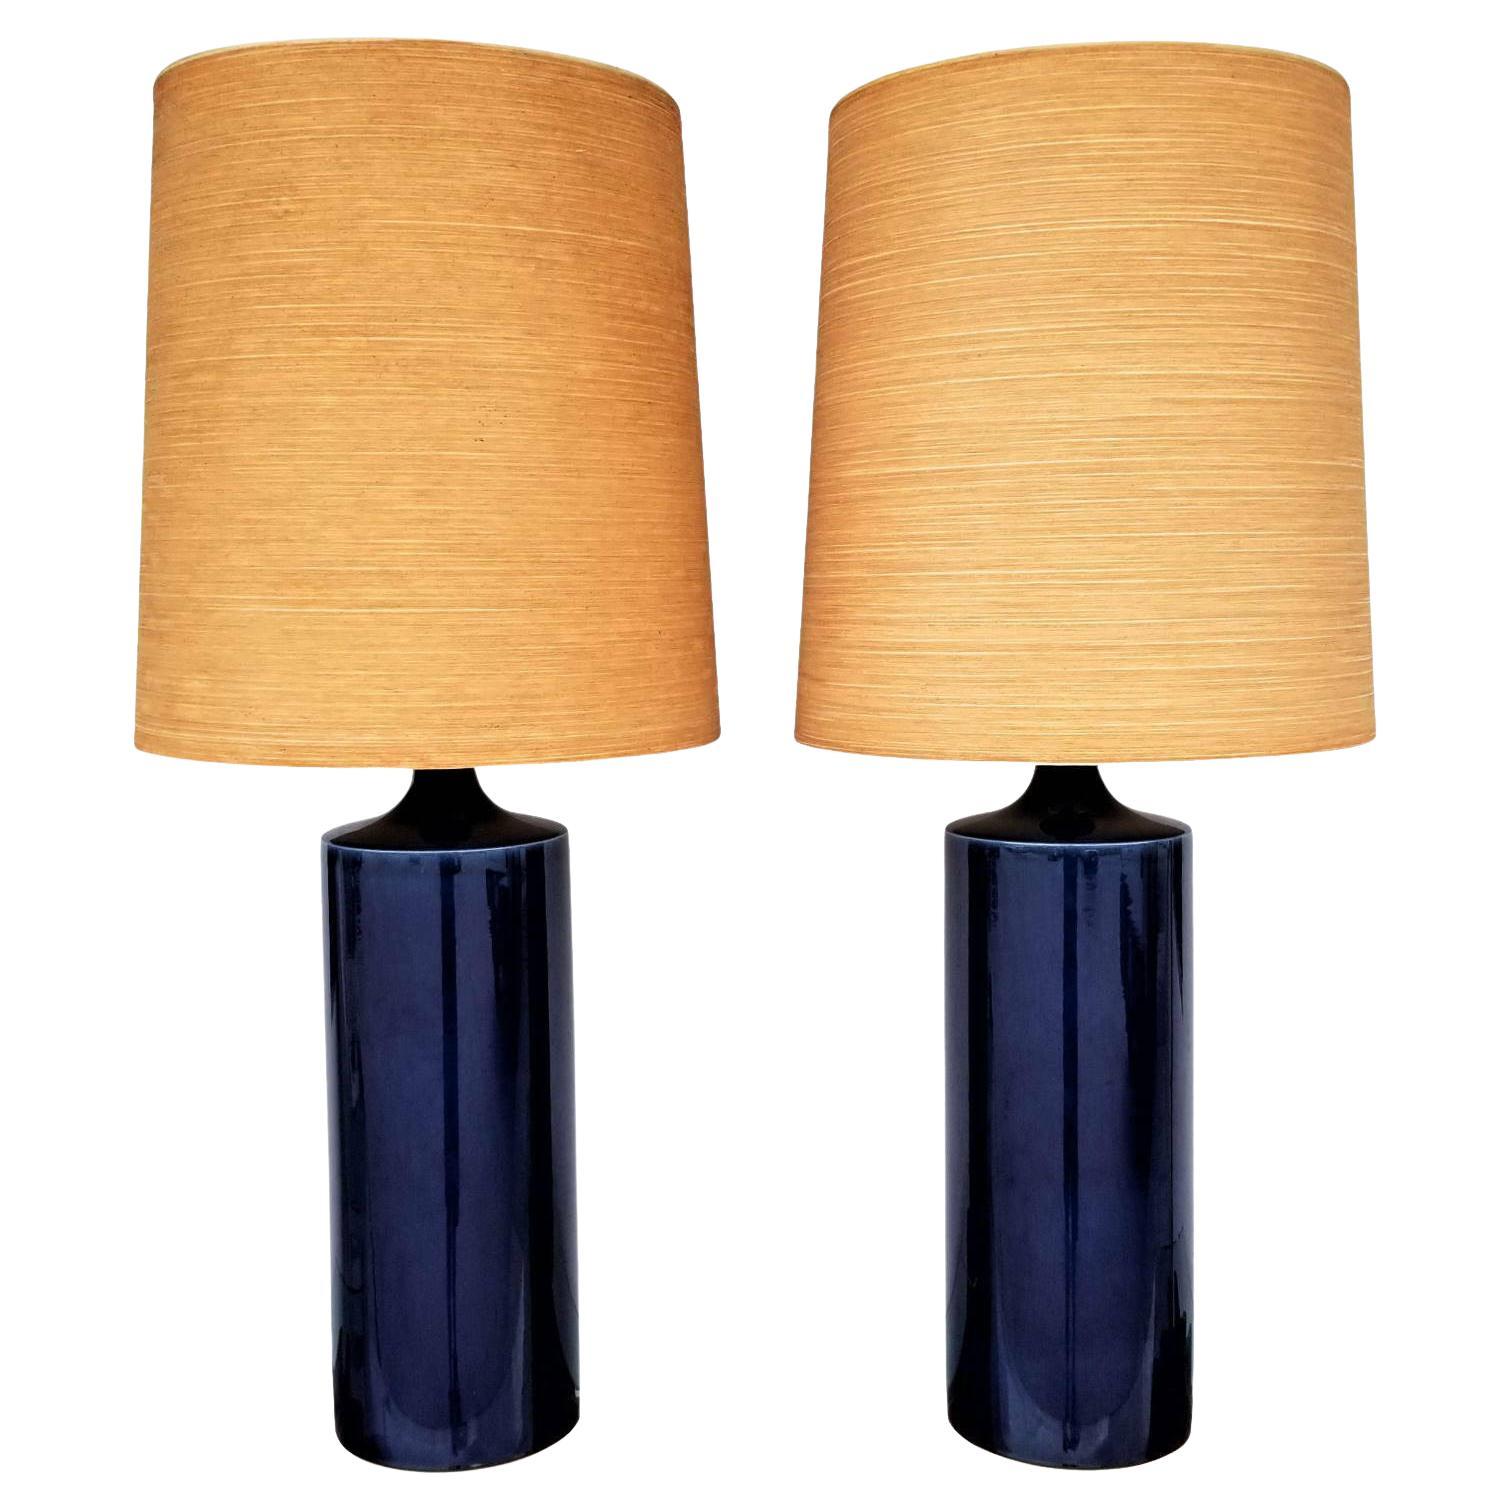 Lotte Gunnar Bostlund Cobalt Blue Ceramic Table Lamps - A Pair